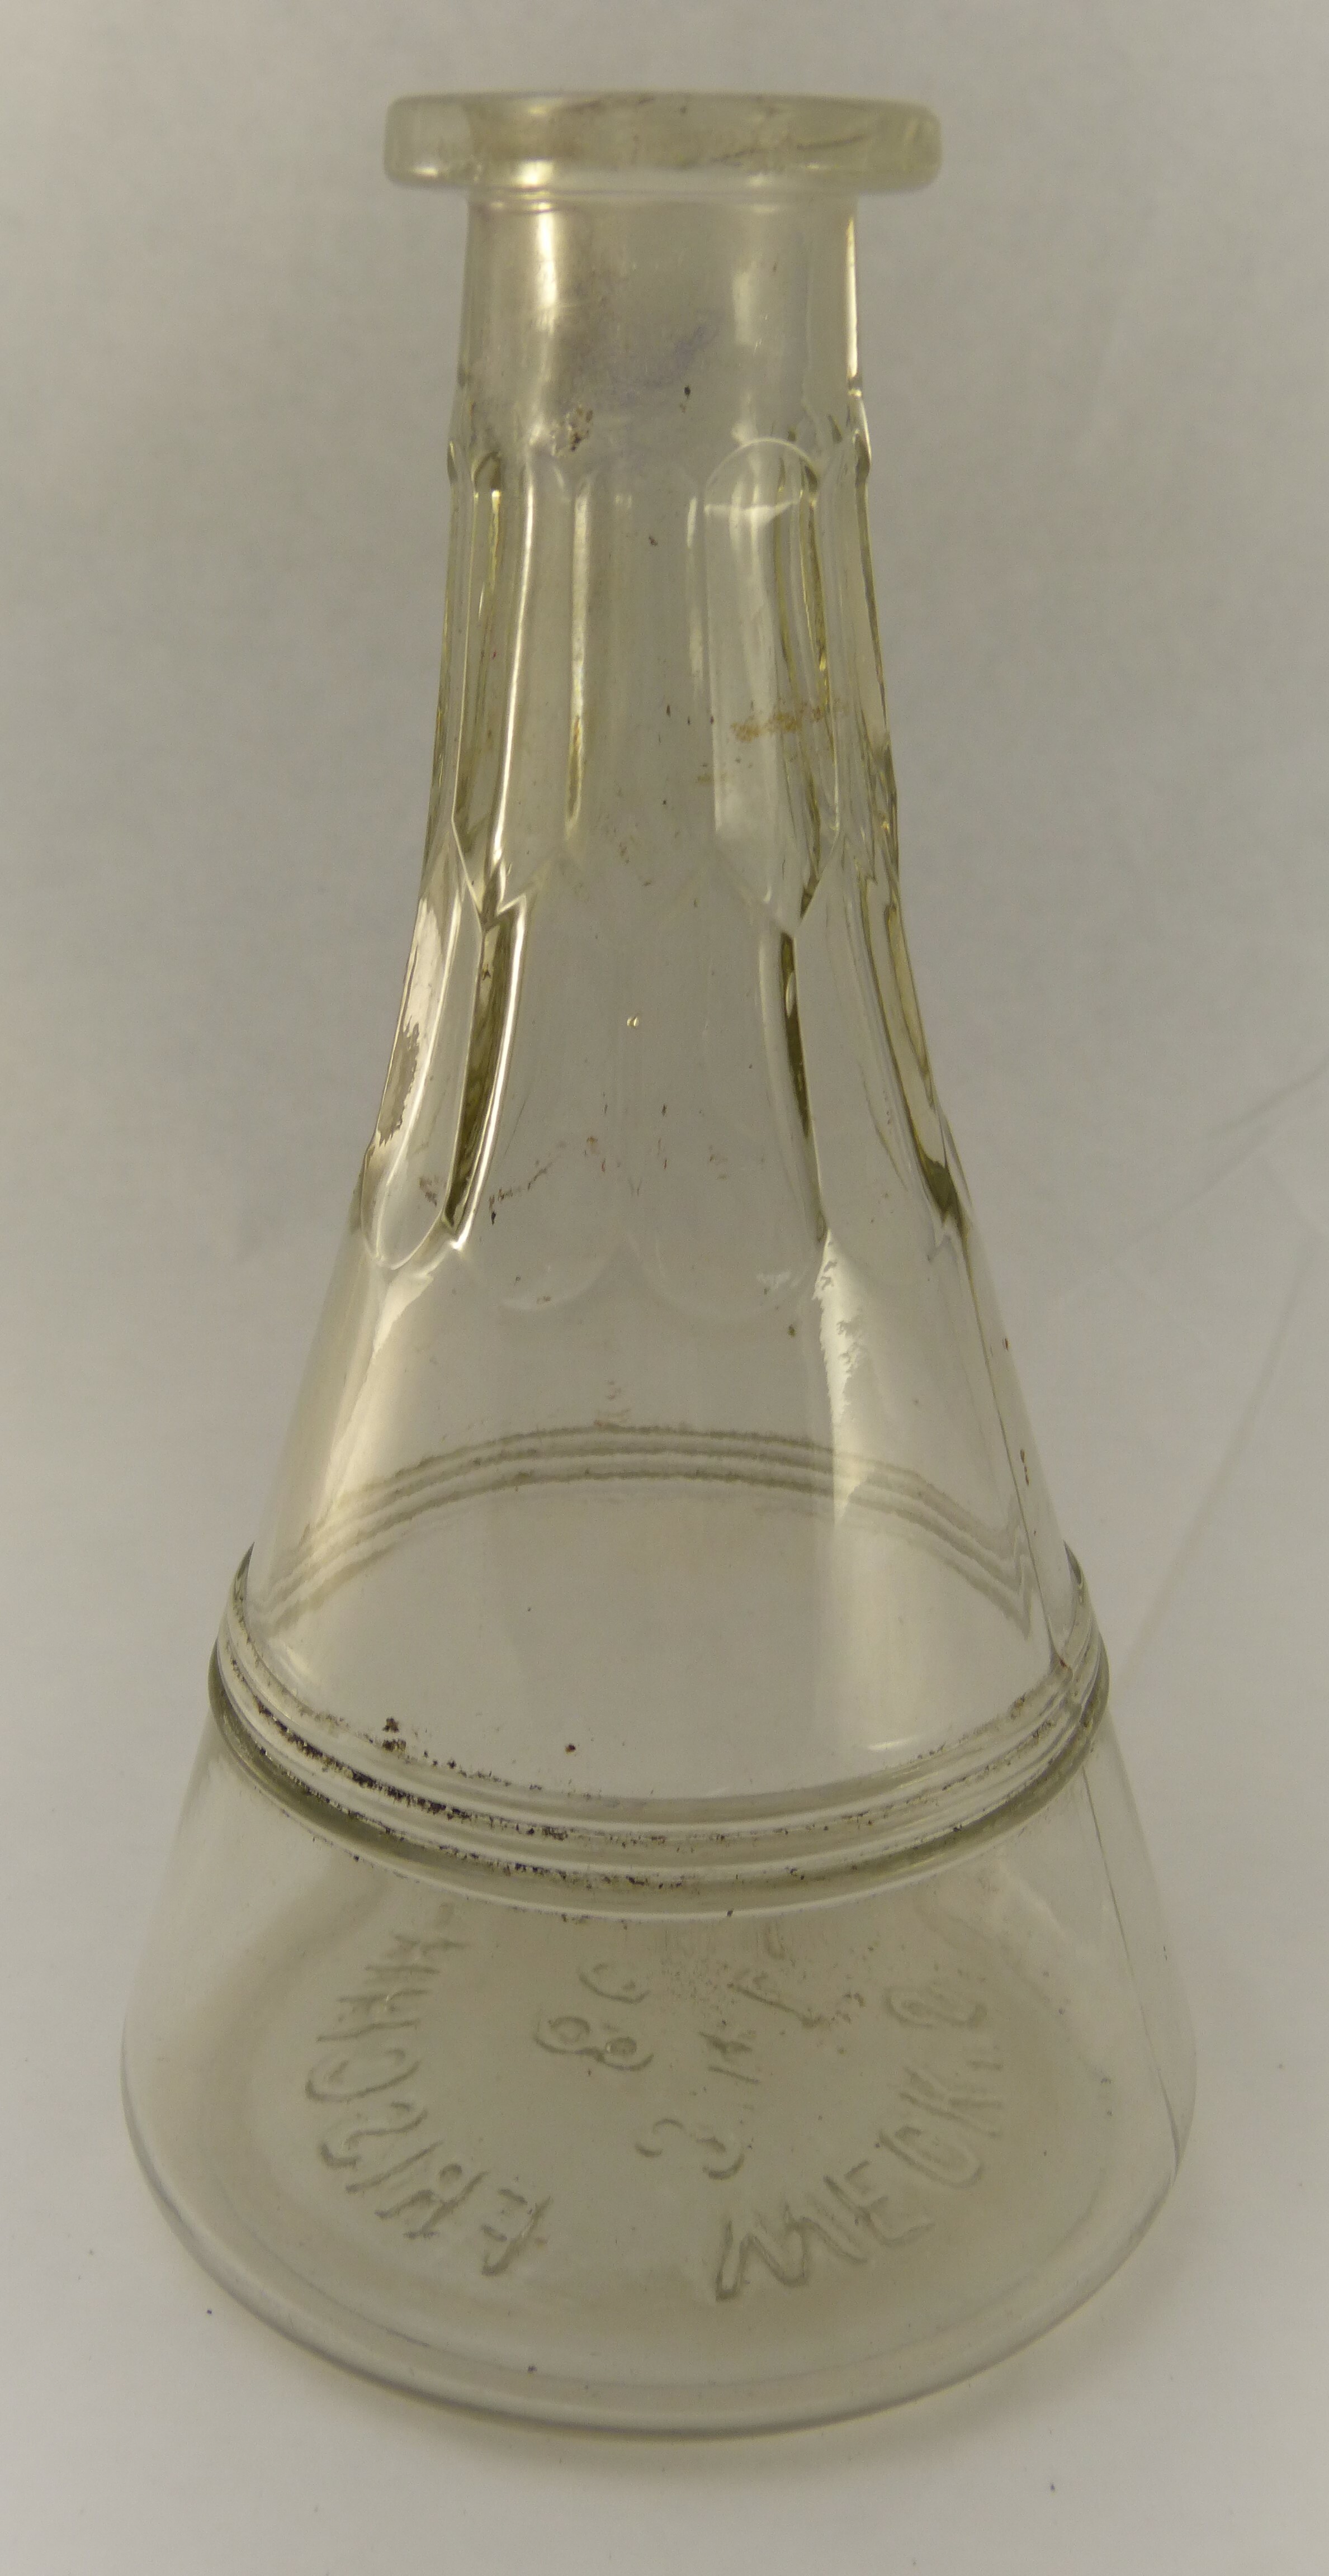 Einmachflasche von Weck (Städt. Hellweg-Museum Geseke CC BY-NC-SA)